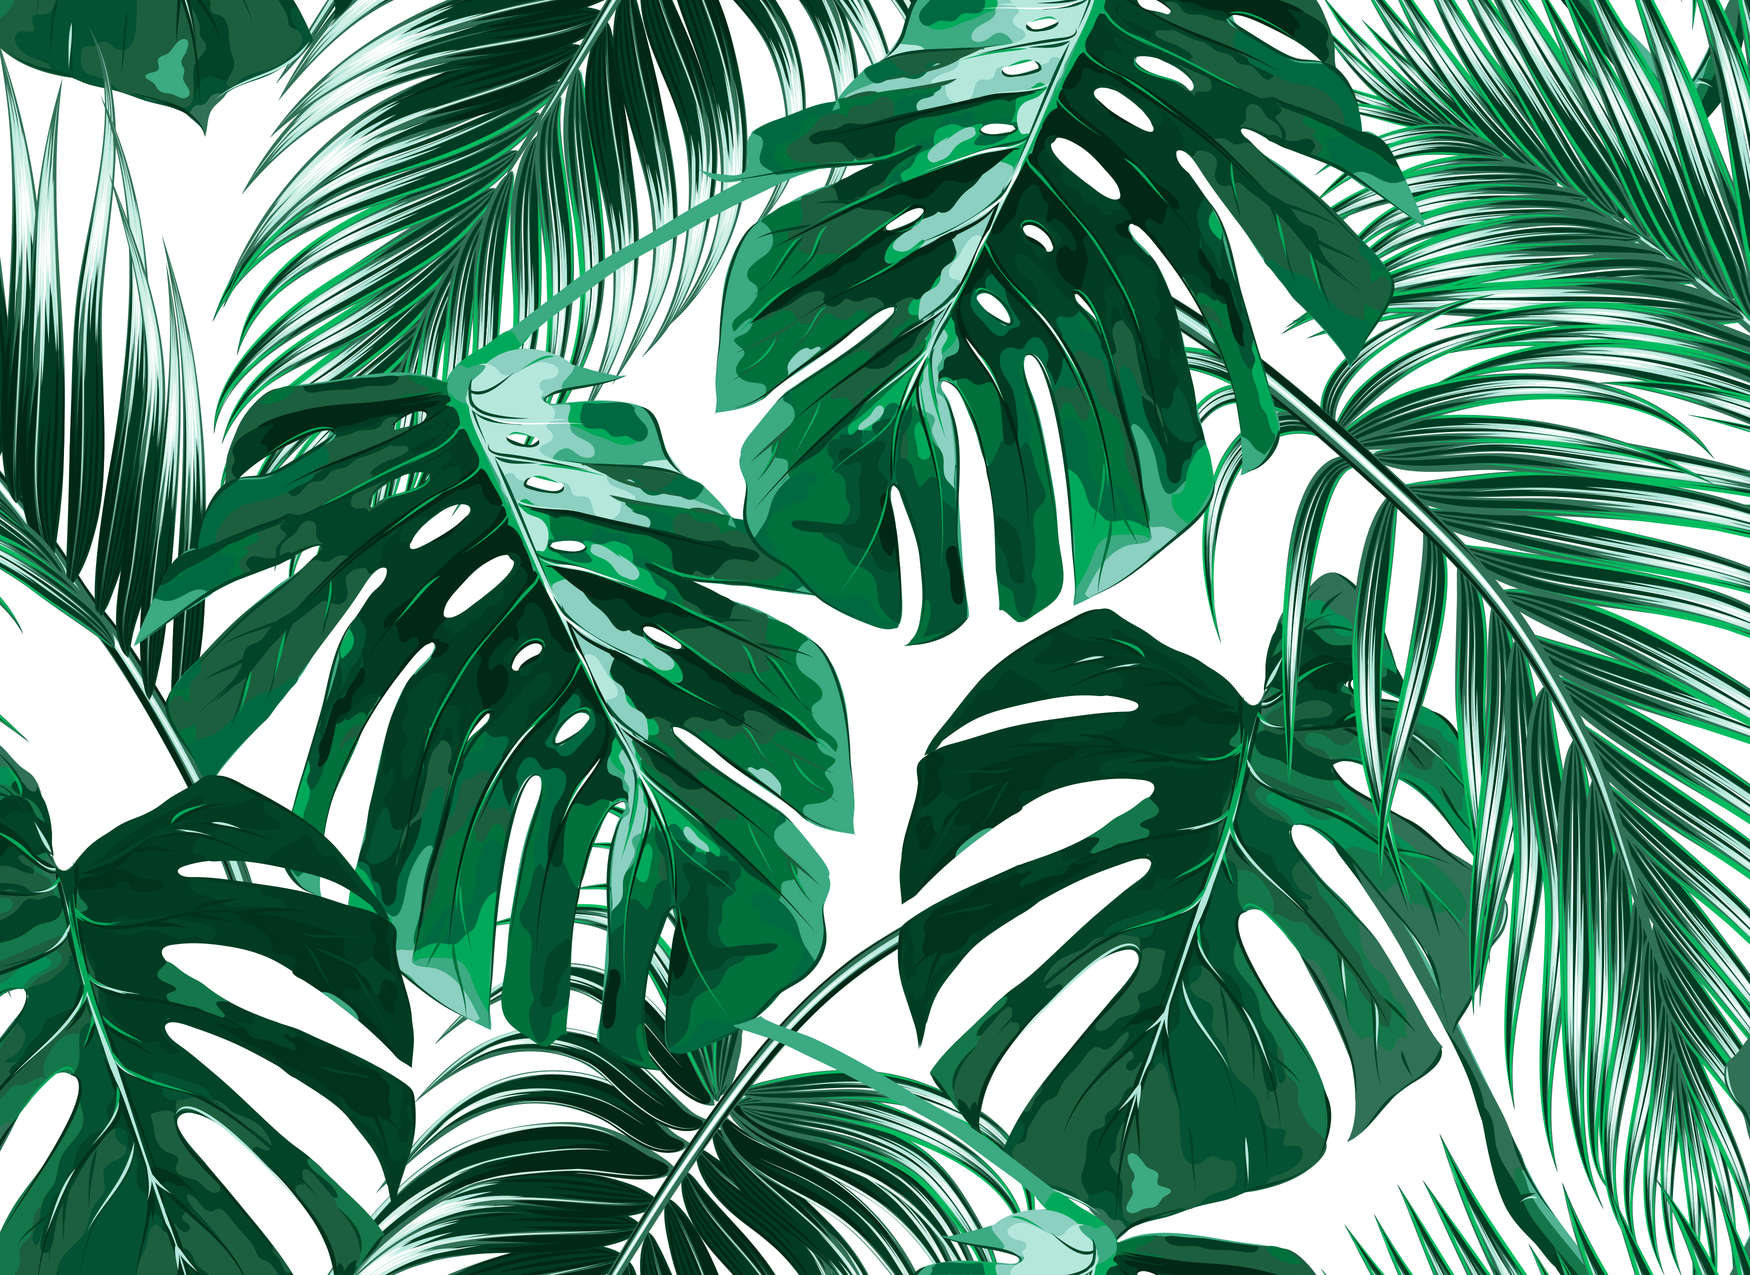             Carta da parati in stile artistico Foglie di palma - Verde, bianco
        